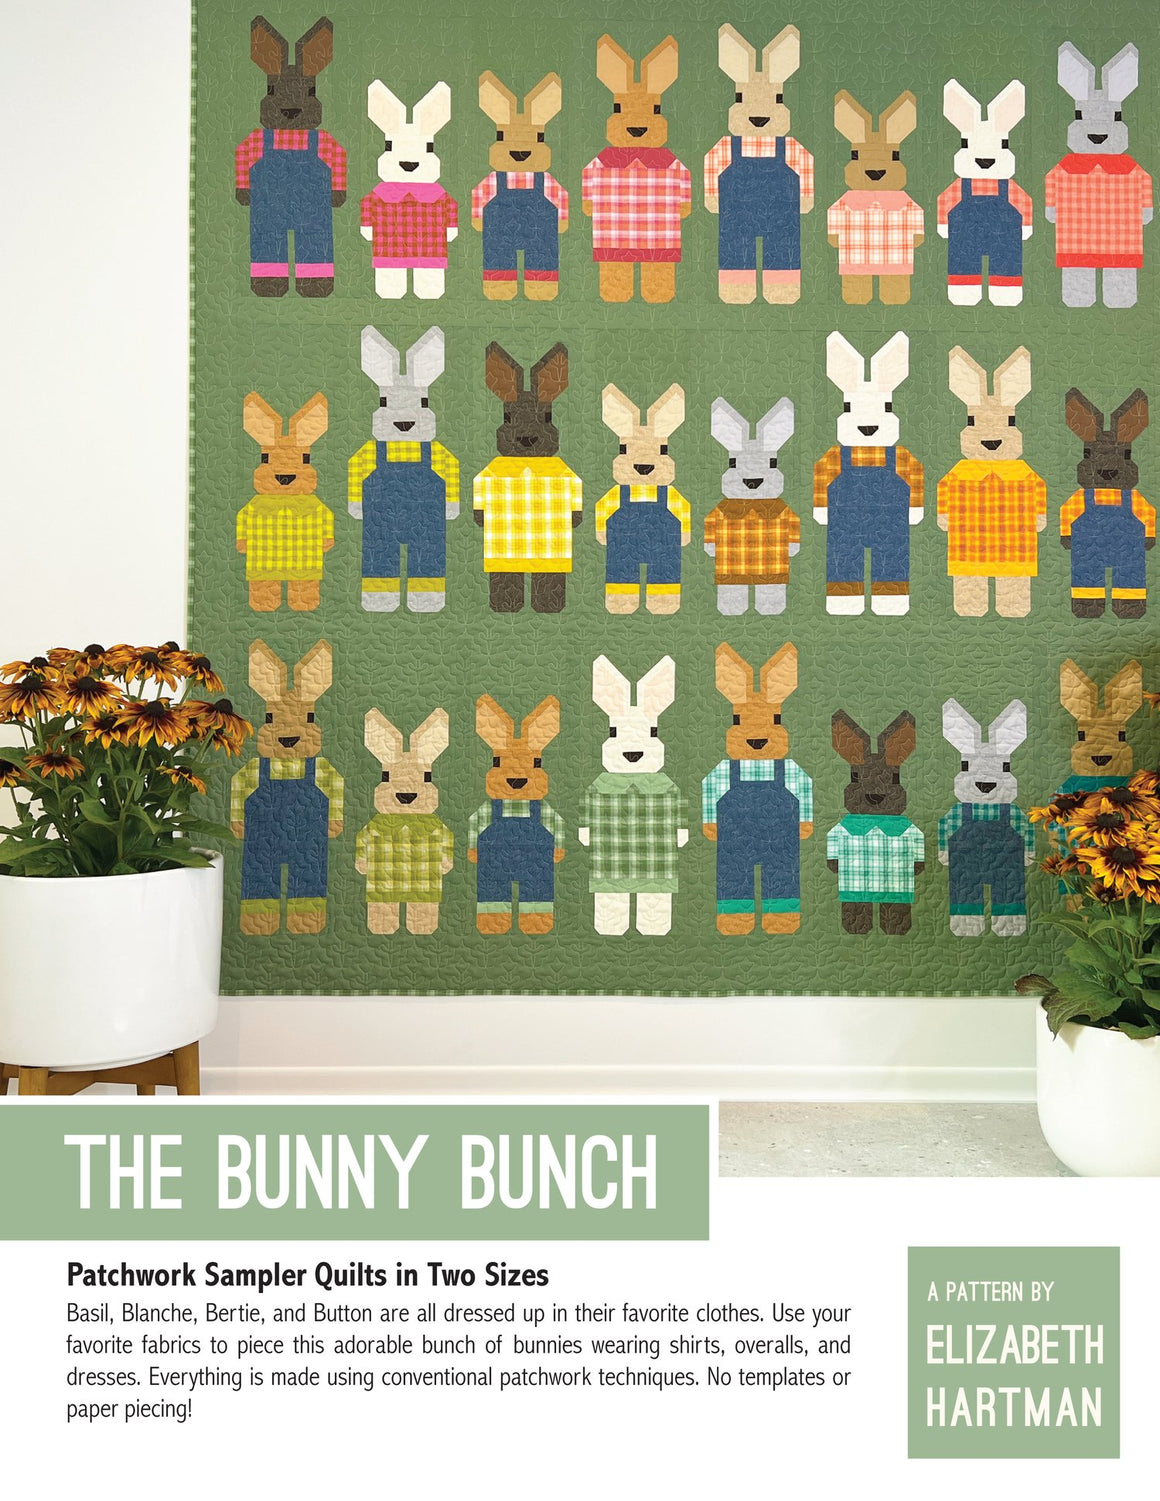 The Bunny Bunch - by Elizabeth Hartman